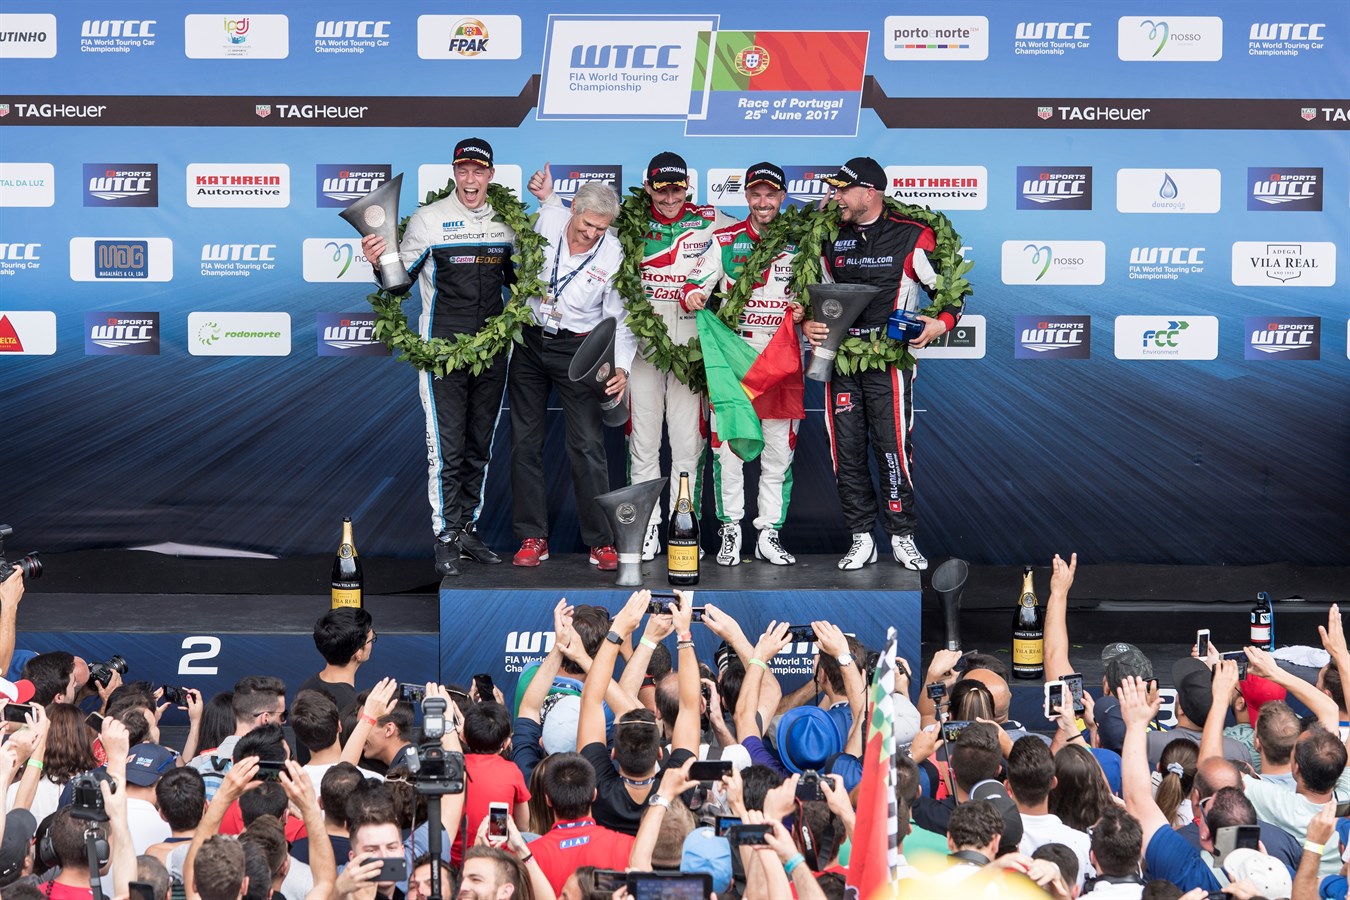 Fortsatt VM-ledning för Polestar Cyan Racing efter dubbel pallplats i Portugal